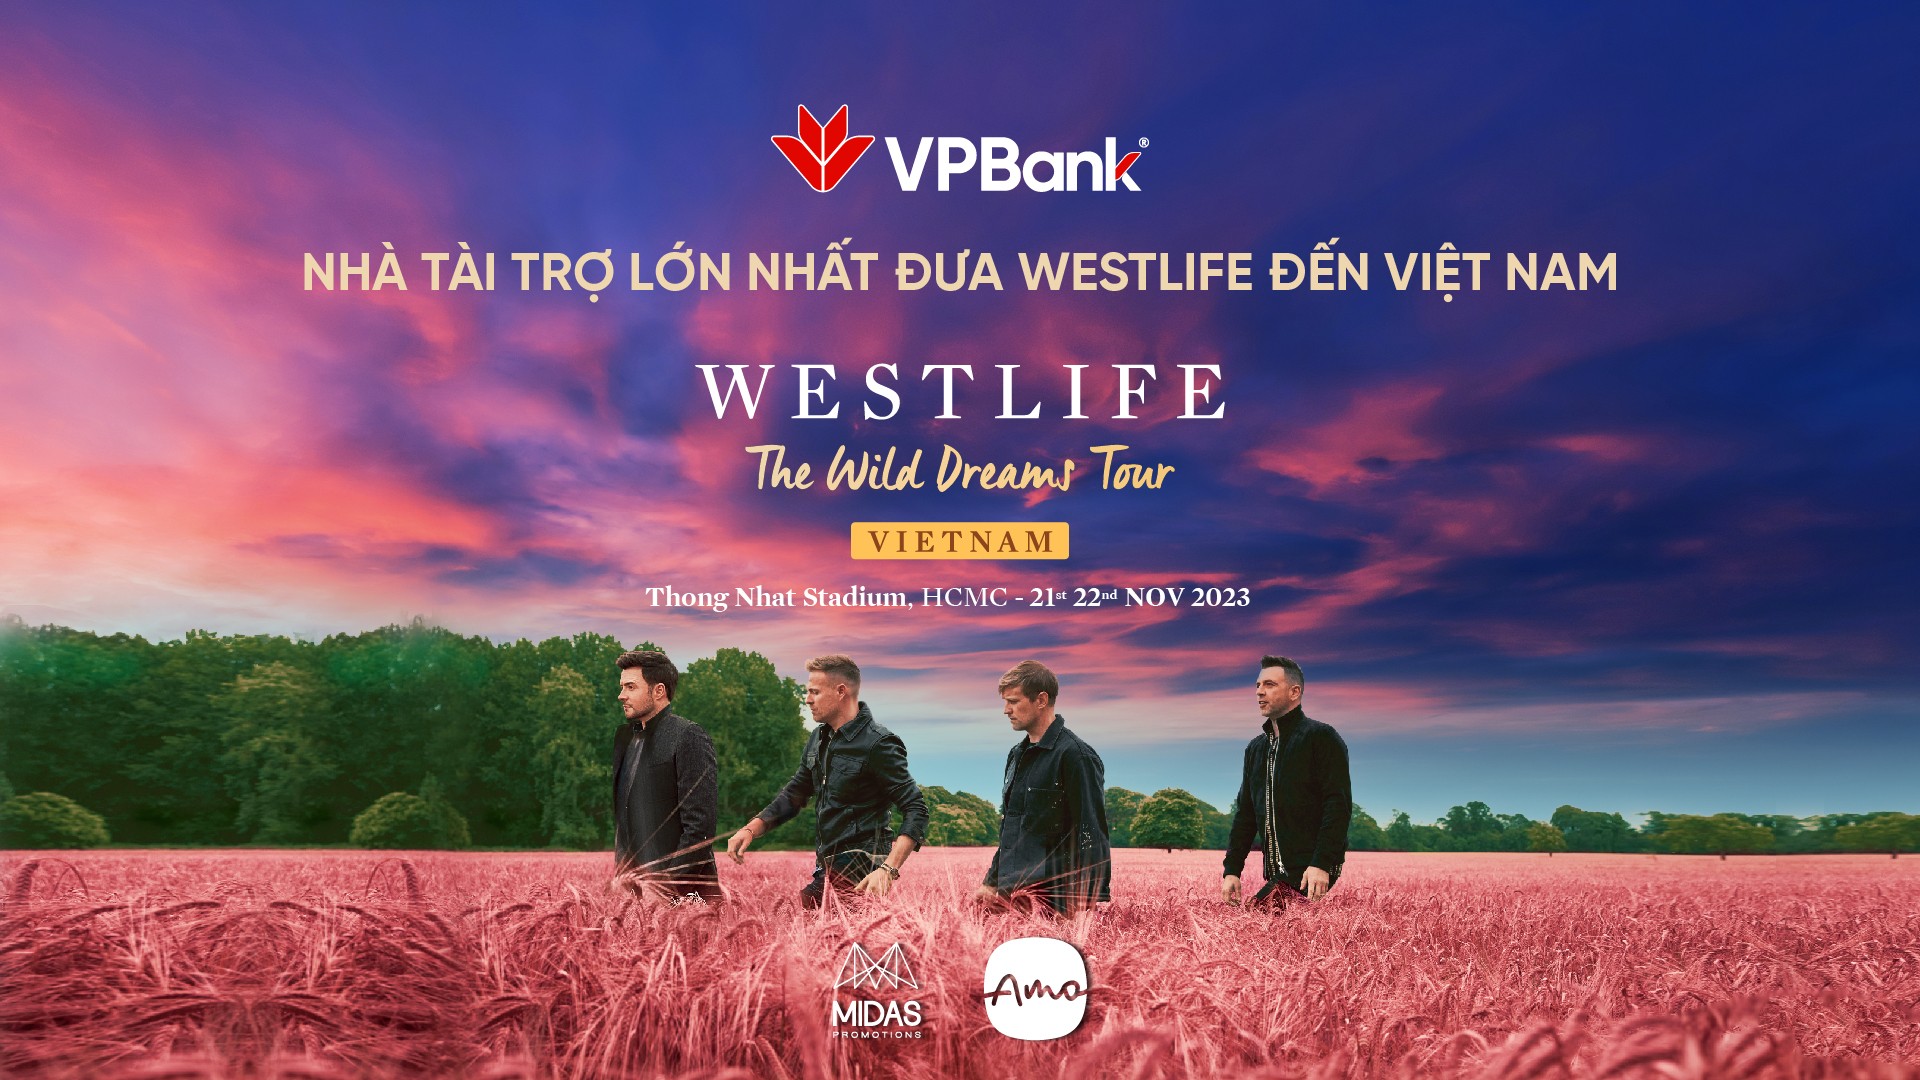 vpbank-westlife-kv-official-1697857939.jpg